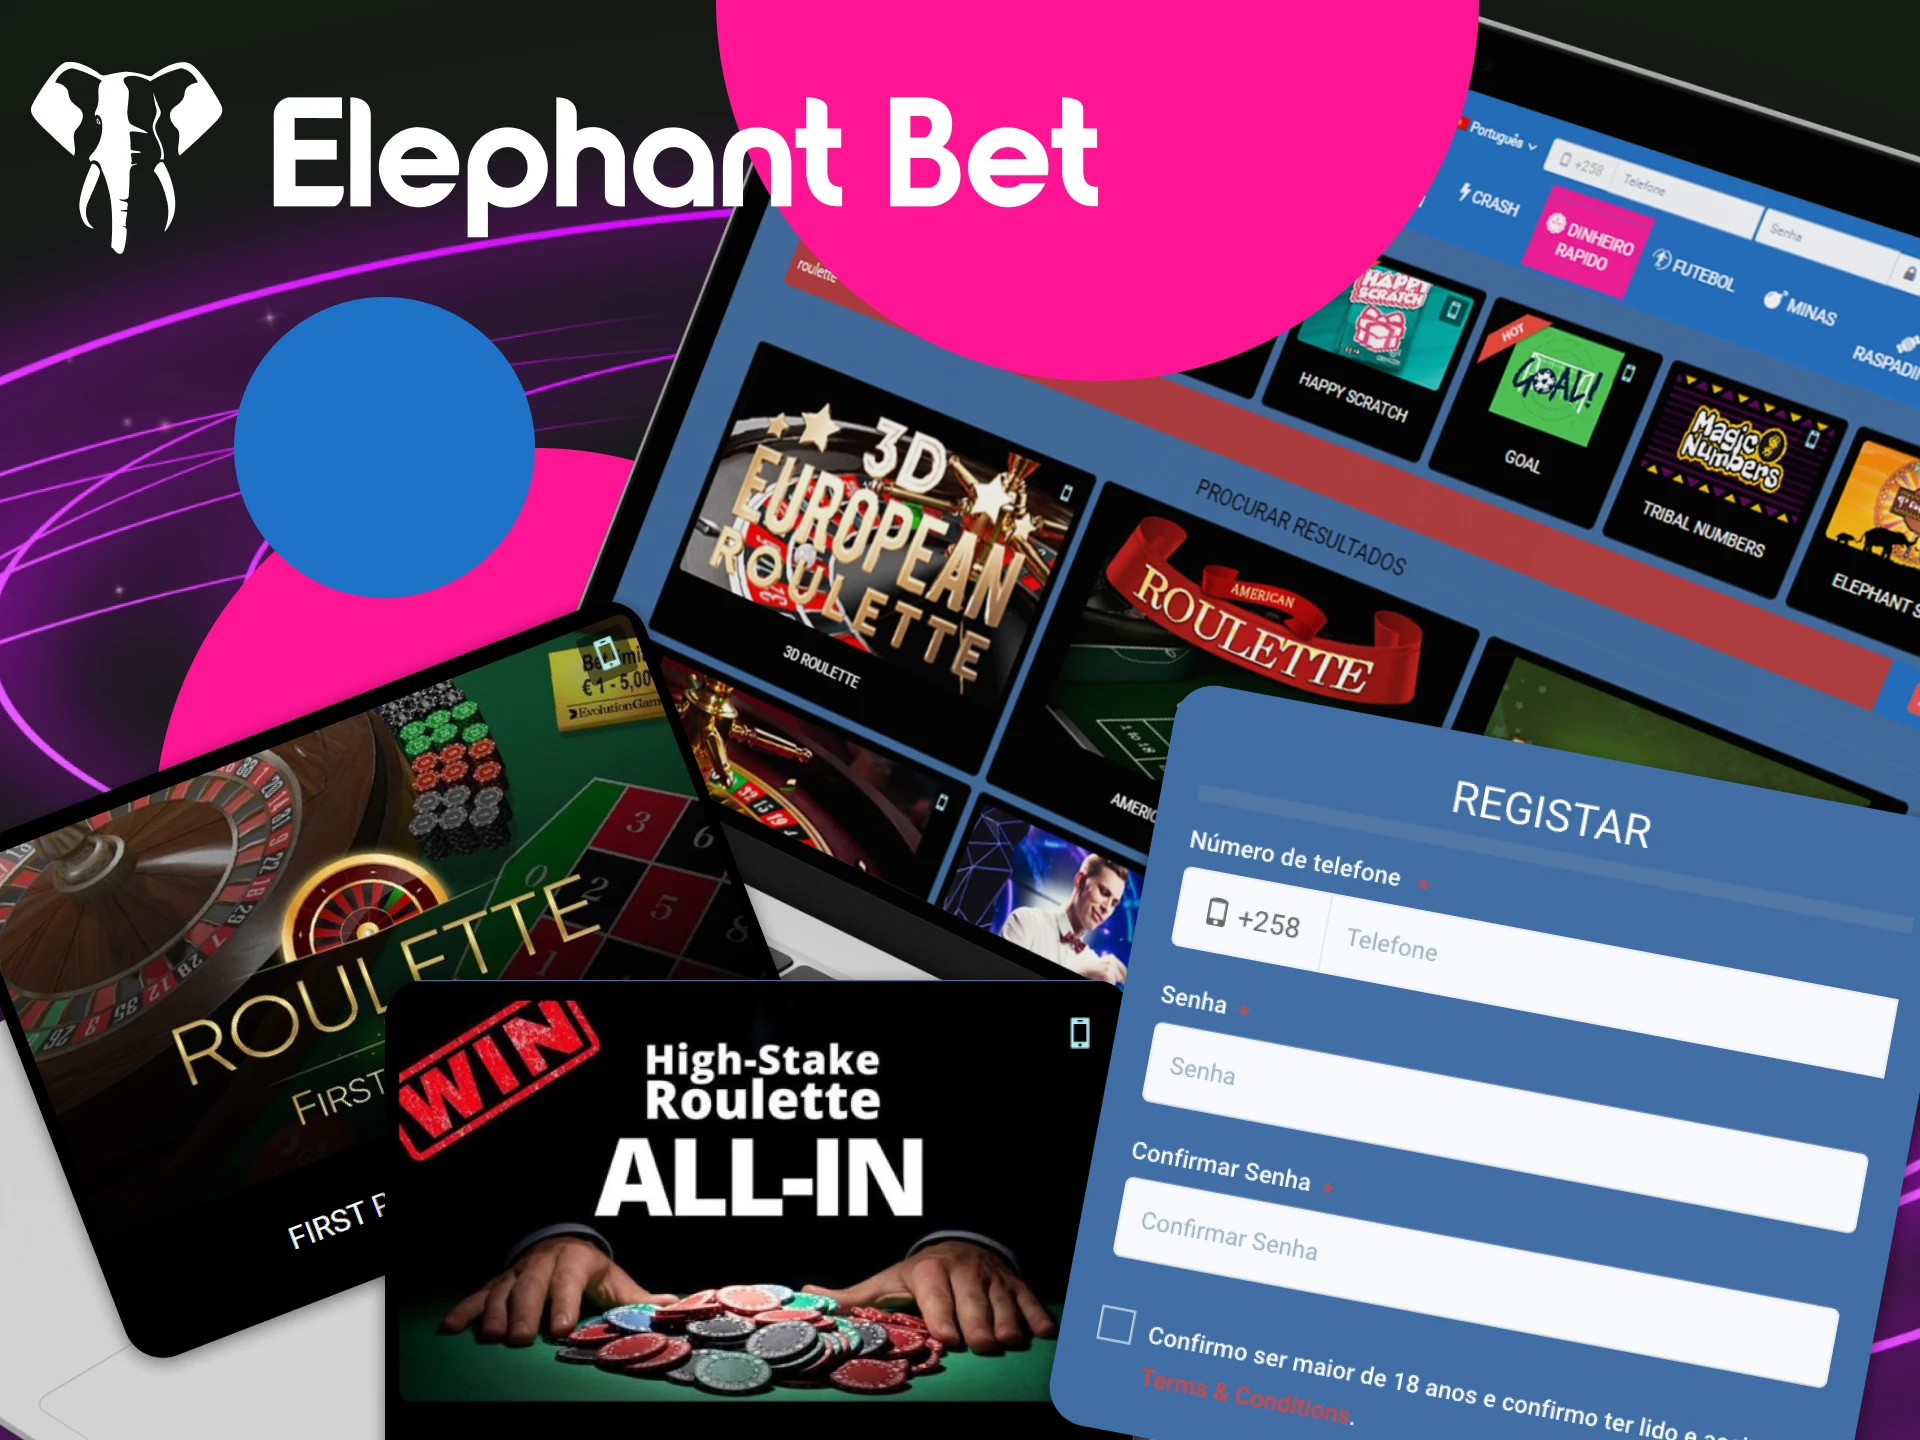 O que um jogador precisa fazer para começar a jogar roleta no site do cassino online Elephant Bet.